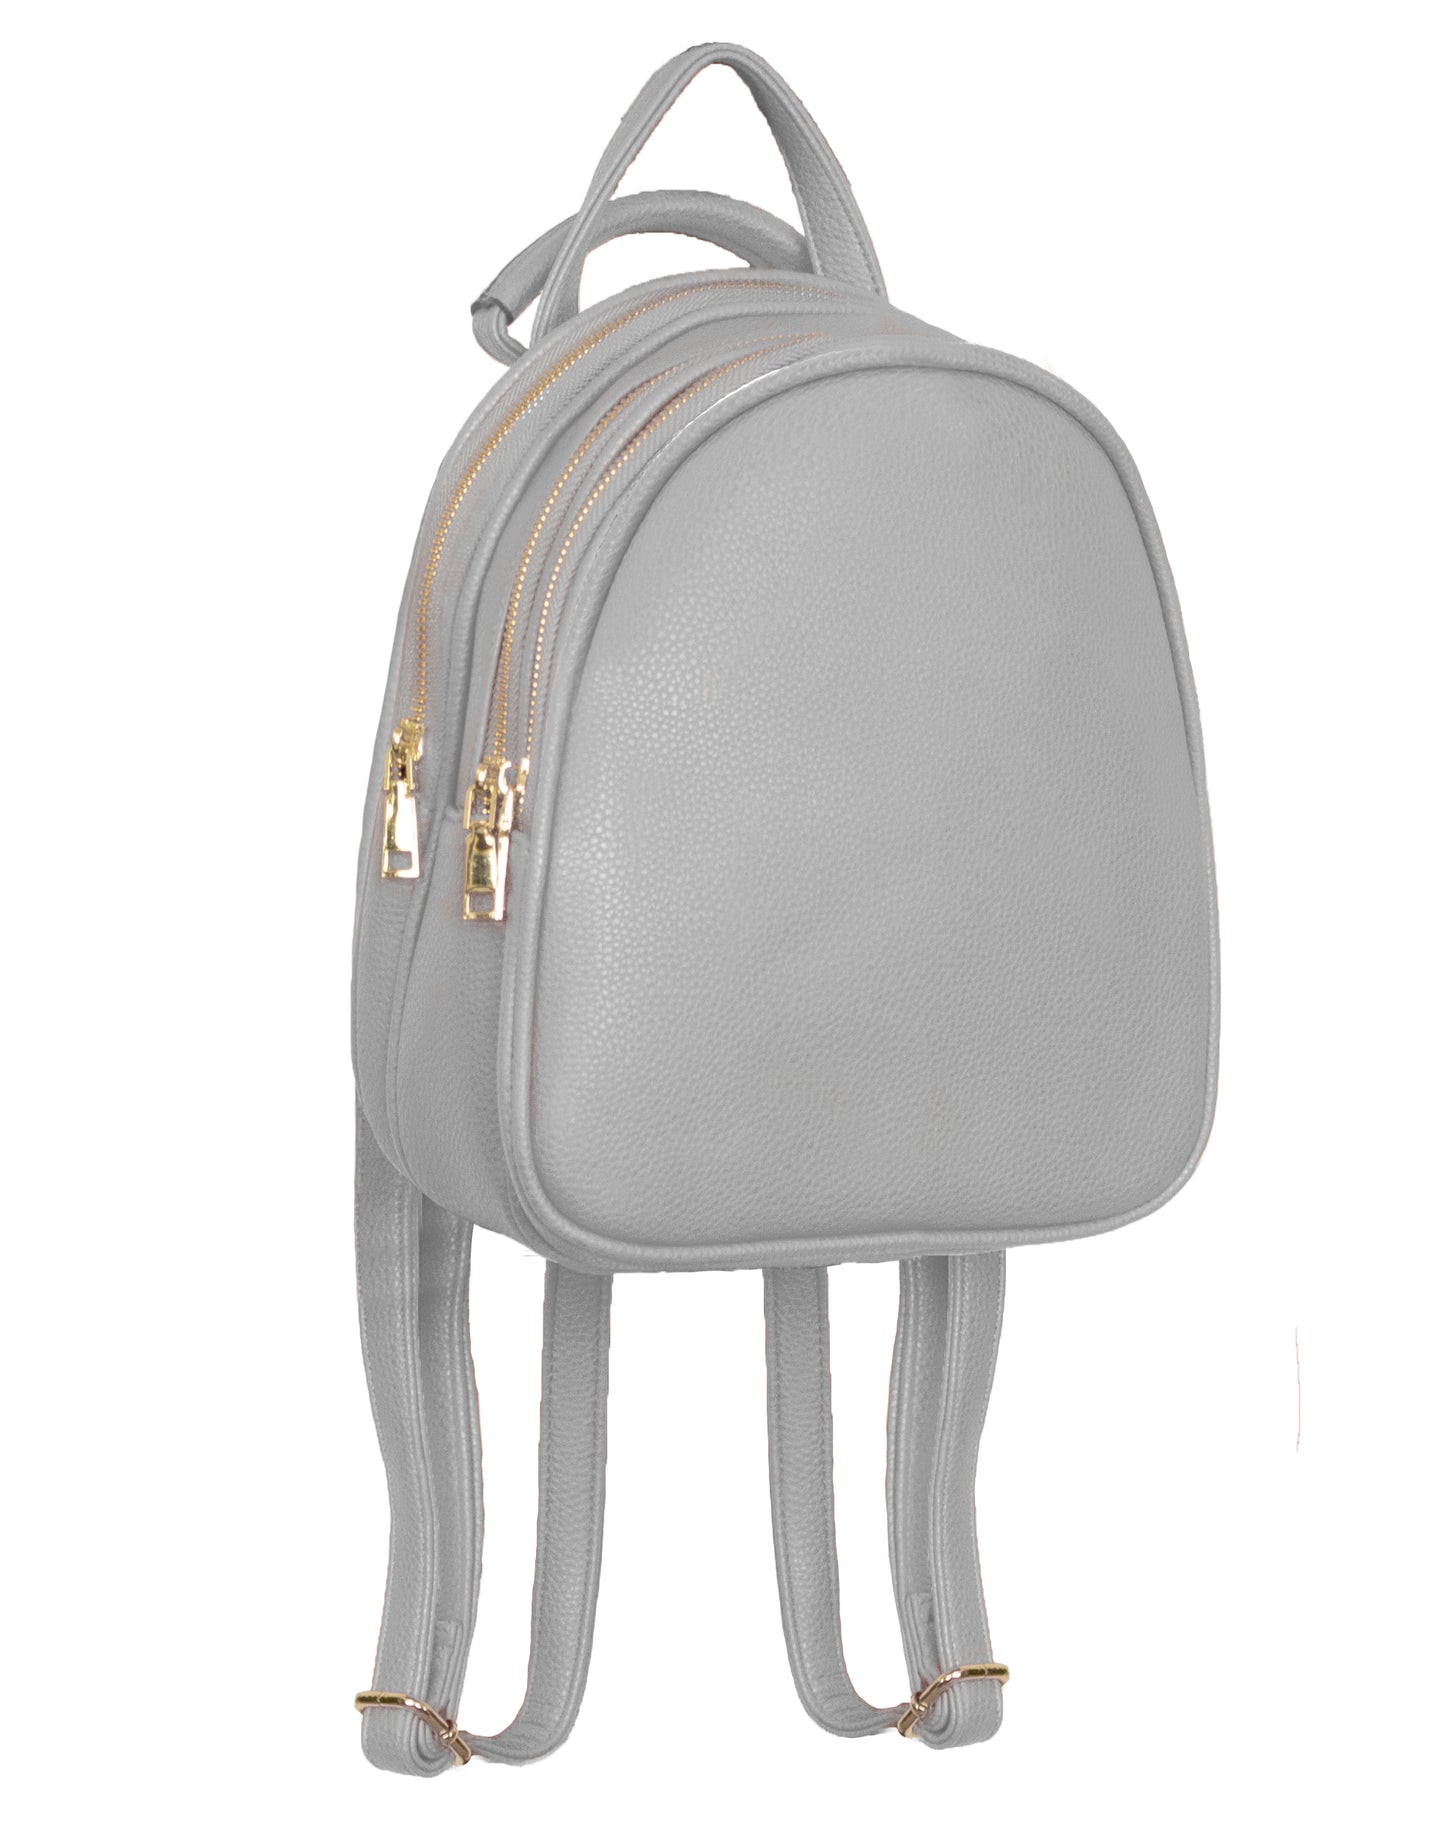 2in1 Backpack and Shoulder/Crossbody Bag